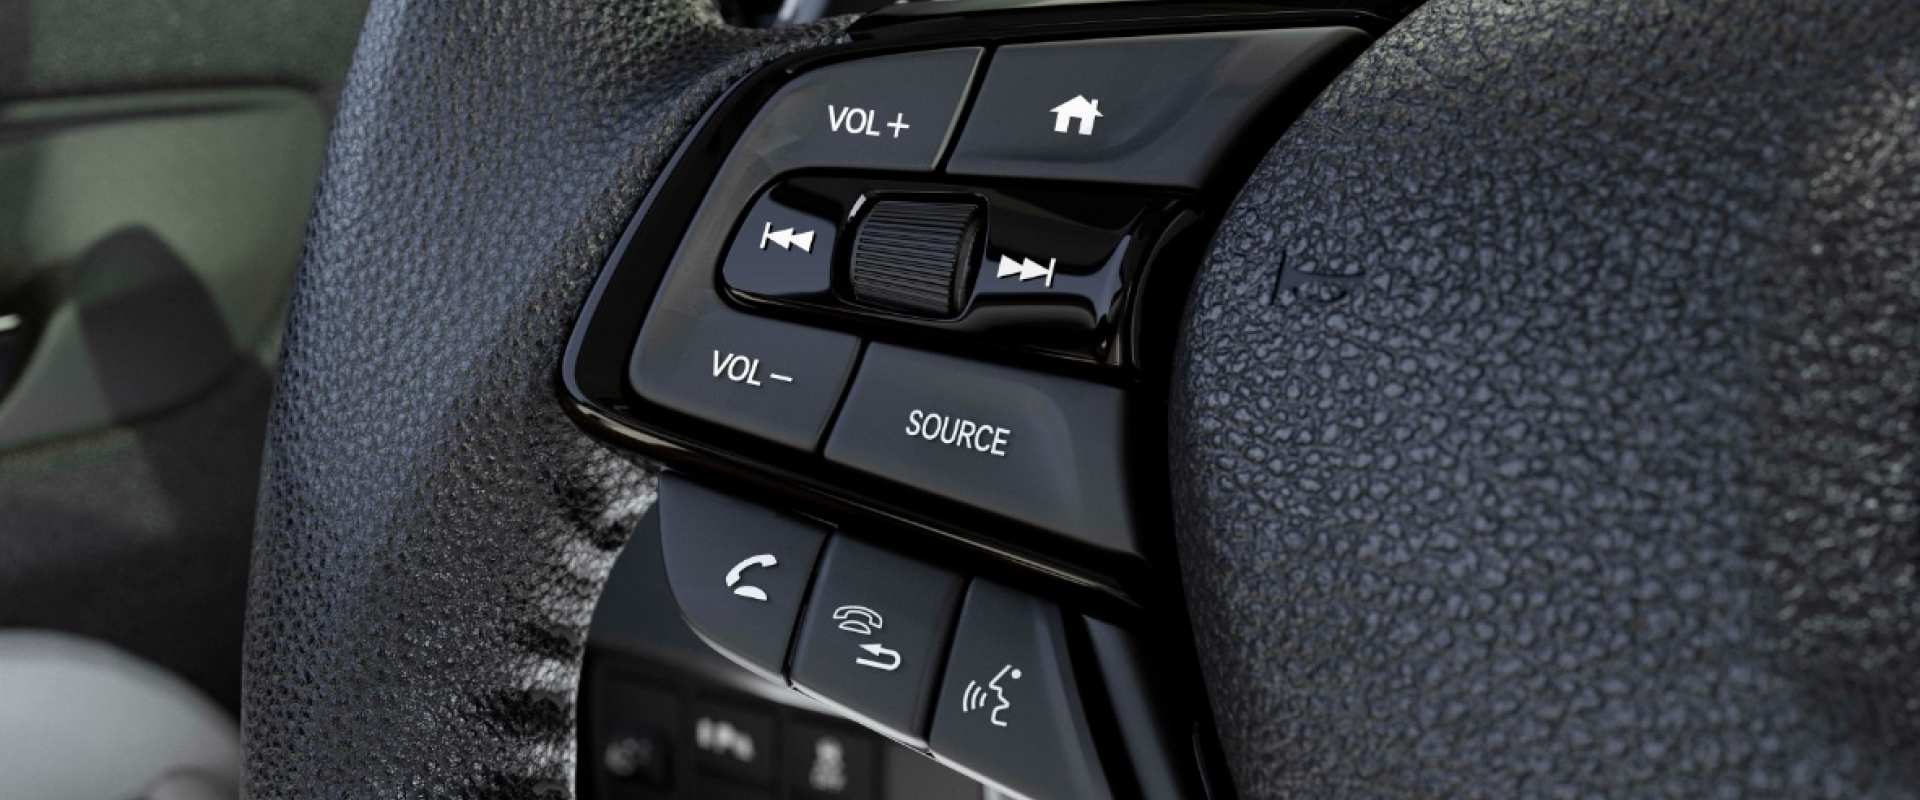 Honda City Hatchback - Bluetooth com HFT e função Voice Tag